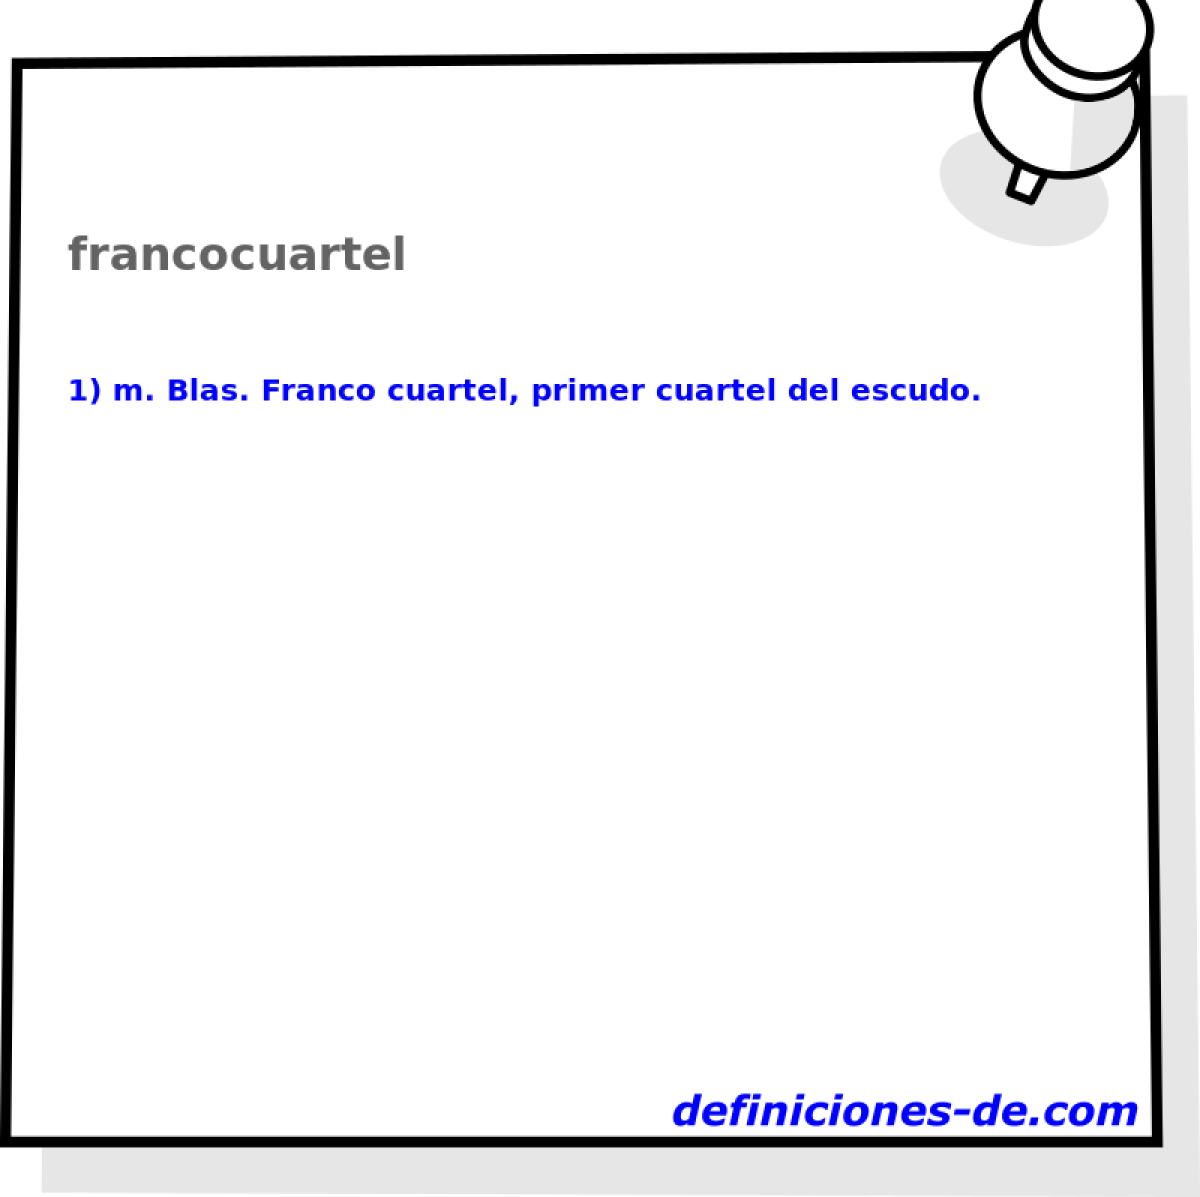 francocuartel 